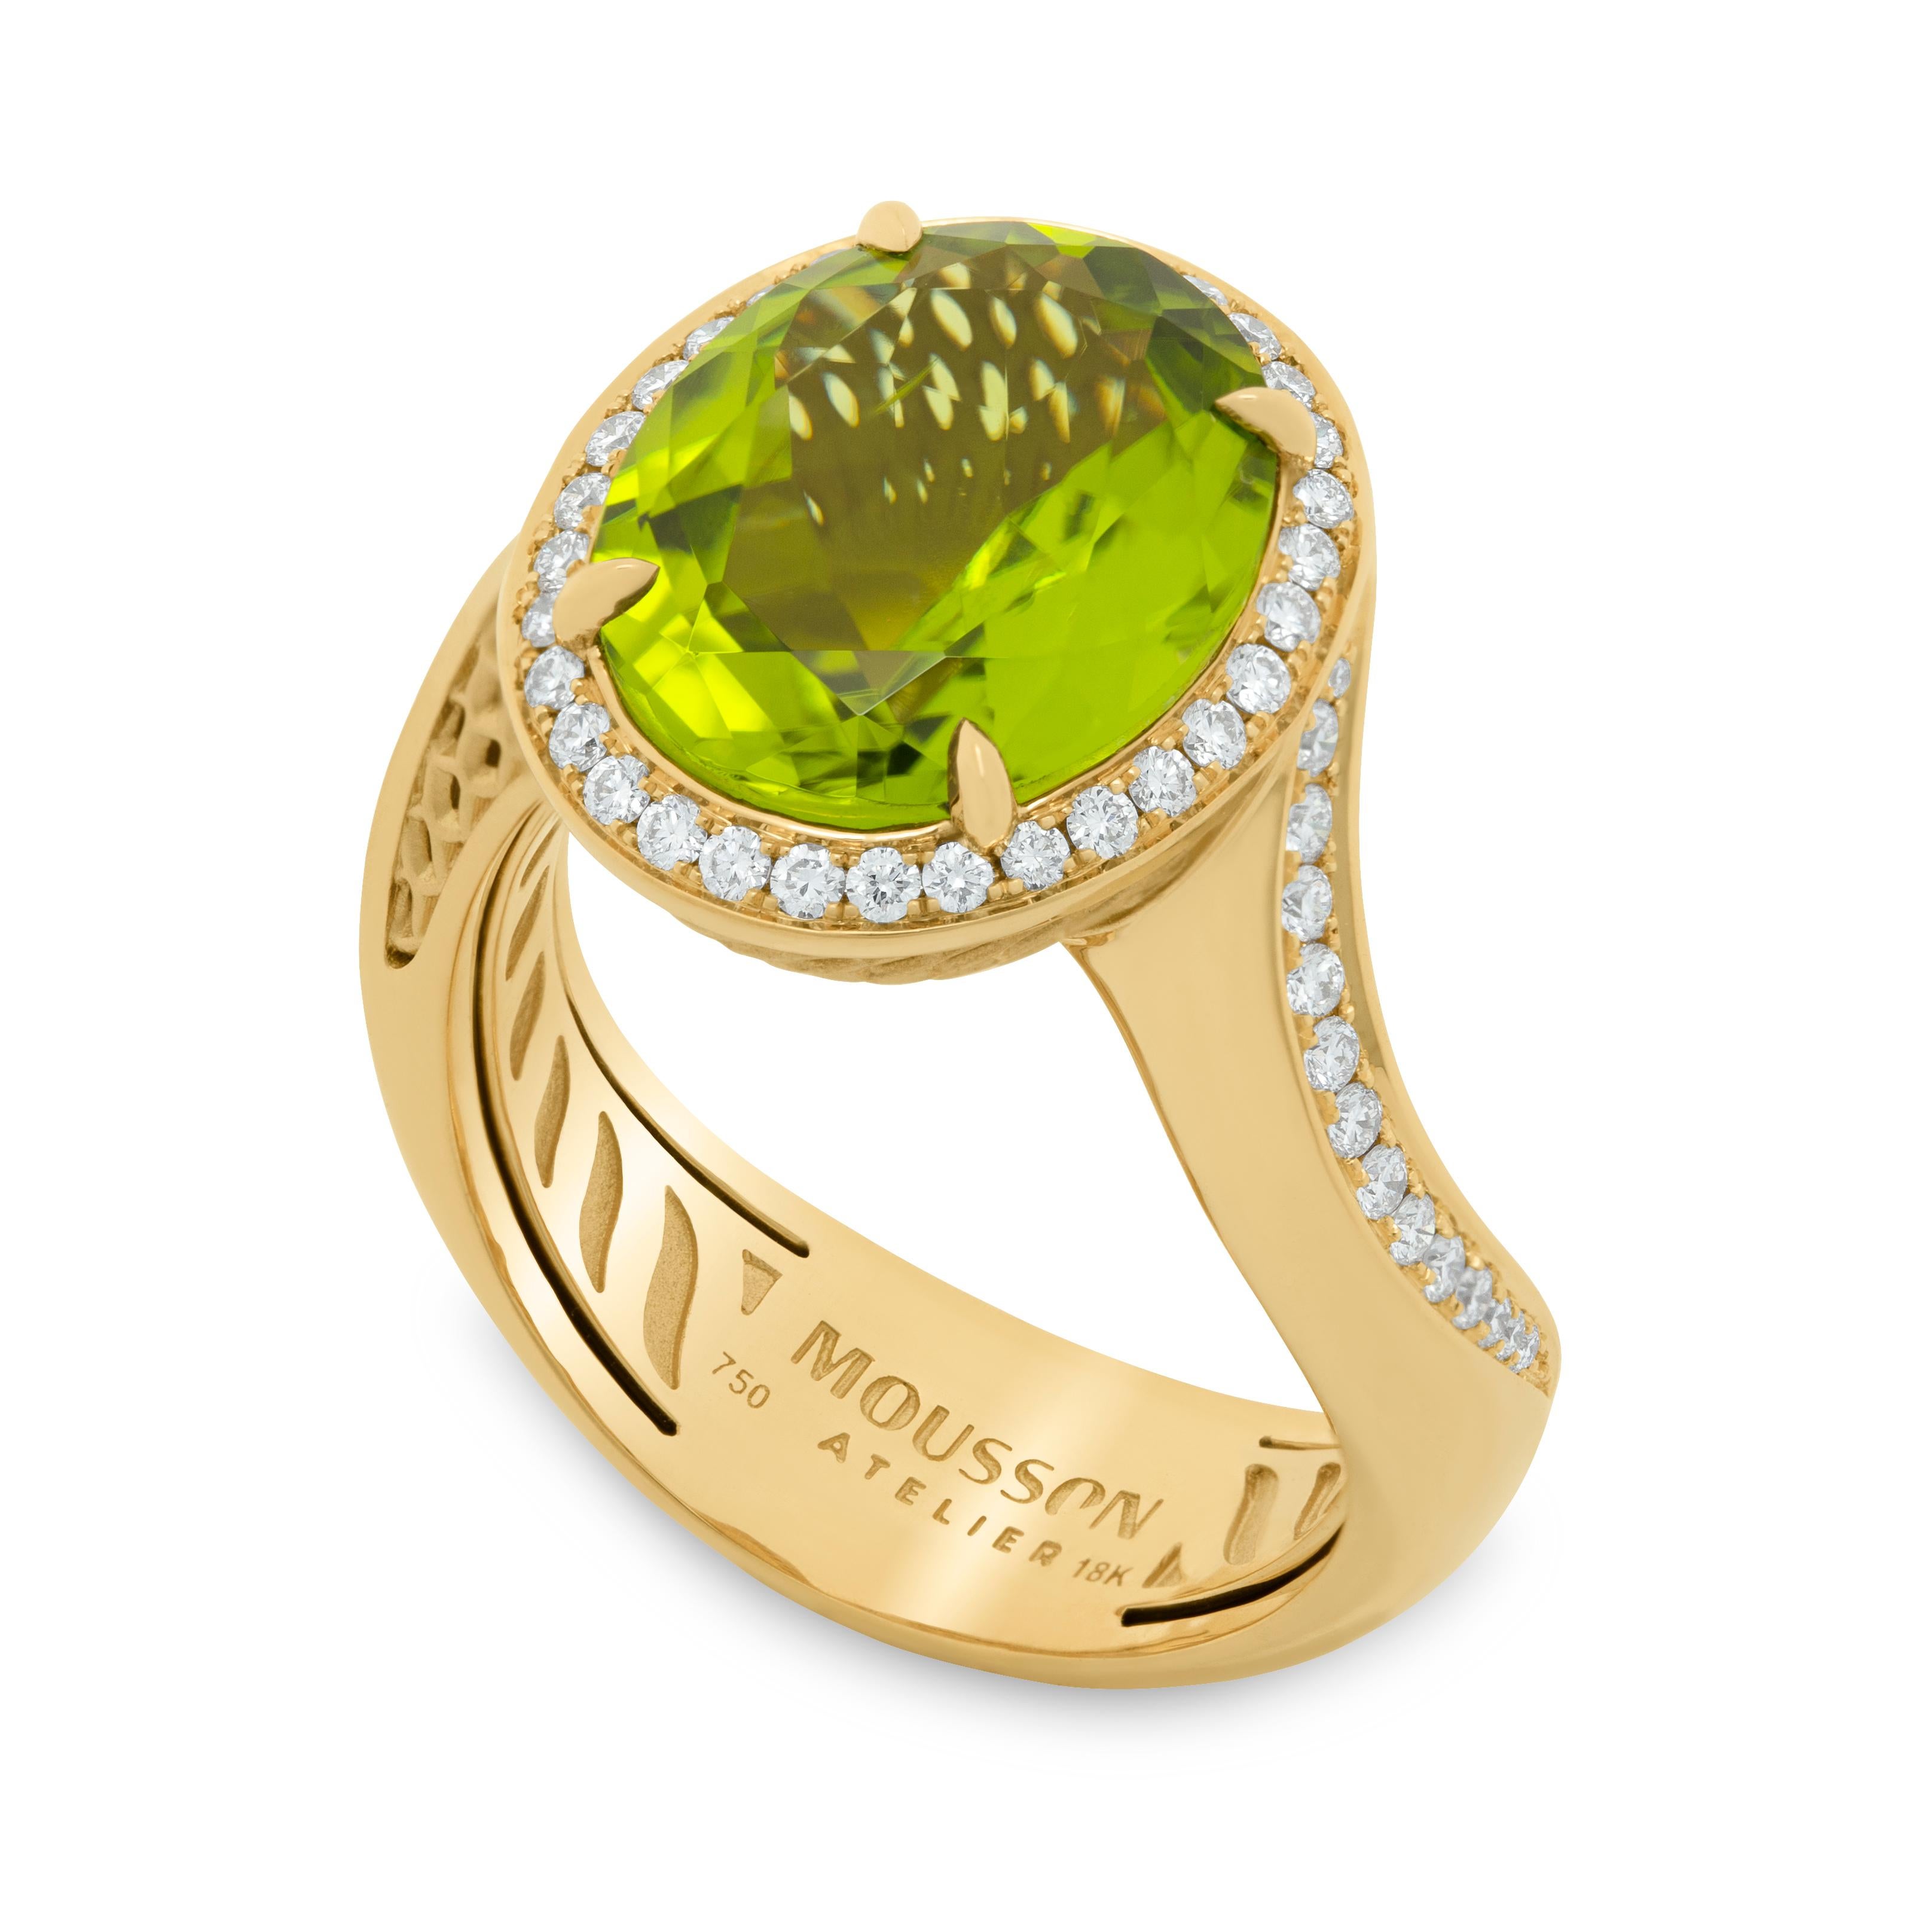 Neuer klassischer Ring mit Peridot und 4,82 Karat Diamanten aus 18 Karat Gelbgold
Wir haben eine Reihe von neuen Ringen mit der gleichen IDEA, aber mit anderen Details veröffentlicht. Wir stellen Ihnen einen Ring aus 18 Karat Gelbgold vor, der im